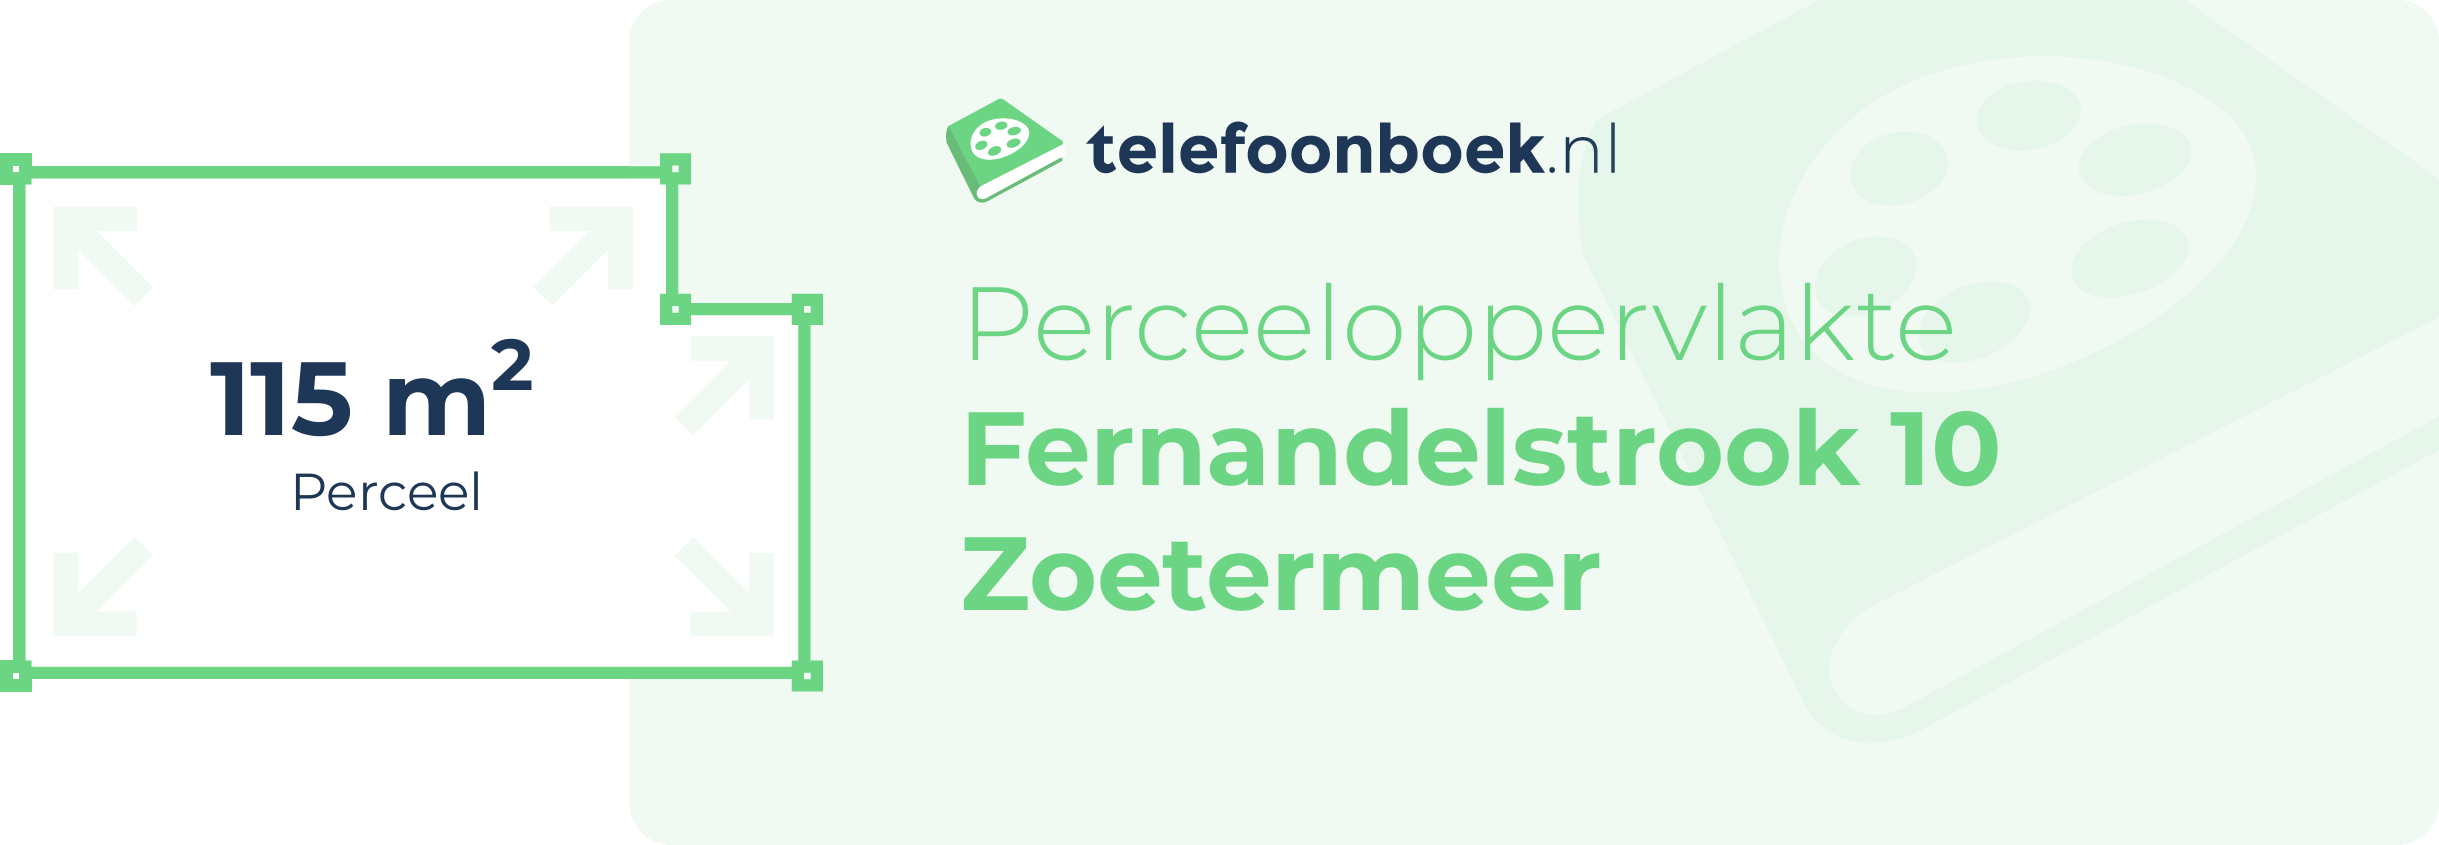 Perceeloppervlakte Fernandelstrook 10 Zoetermeer